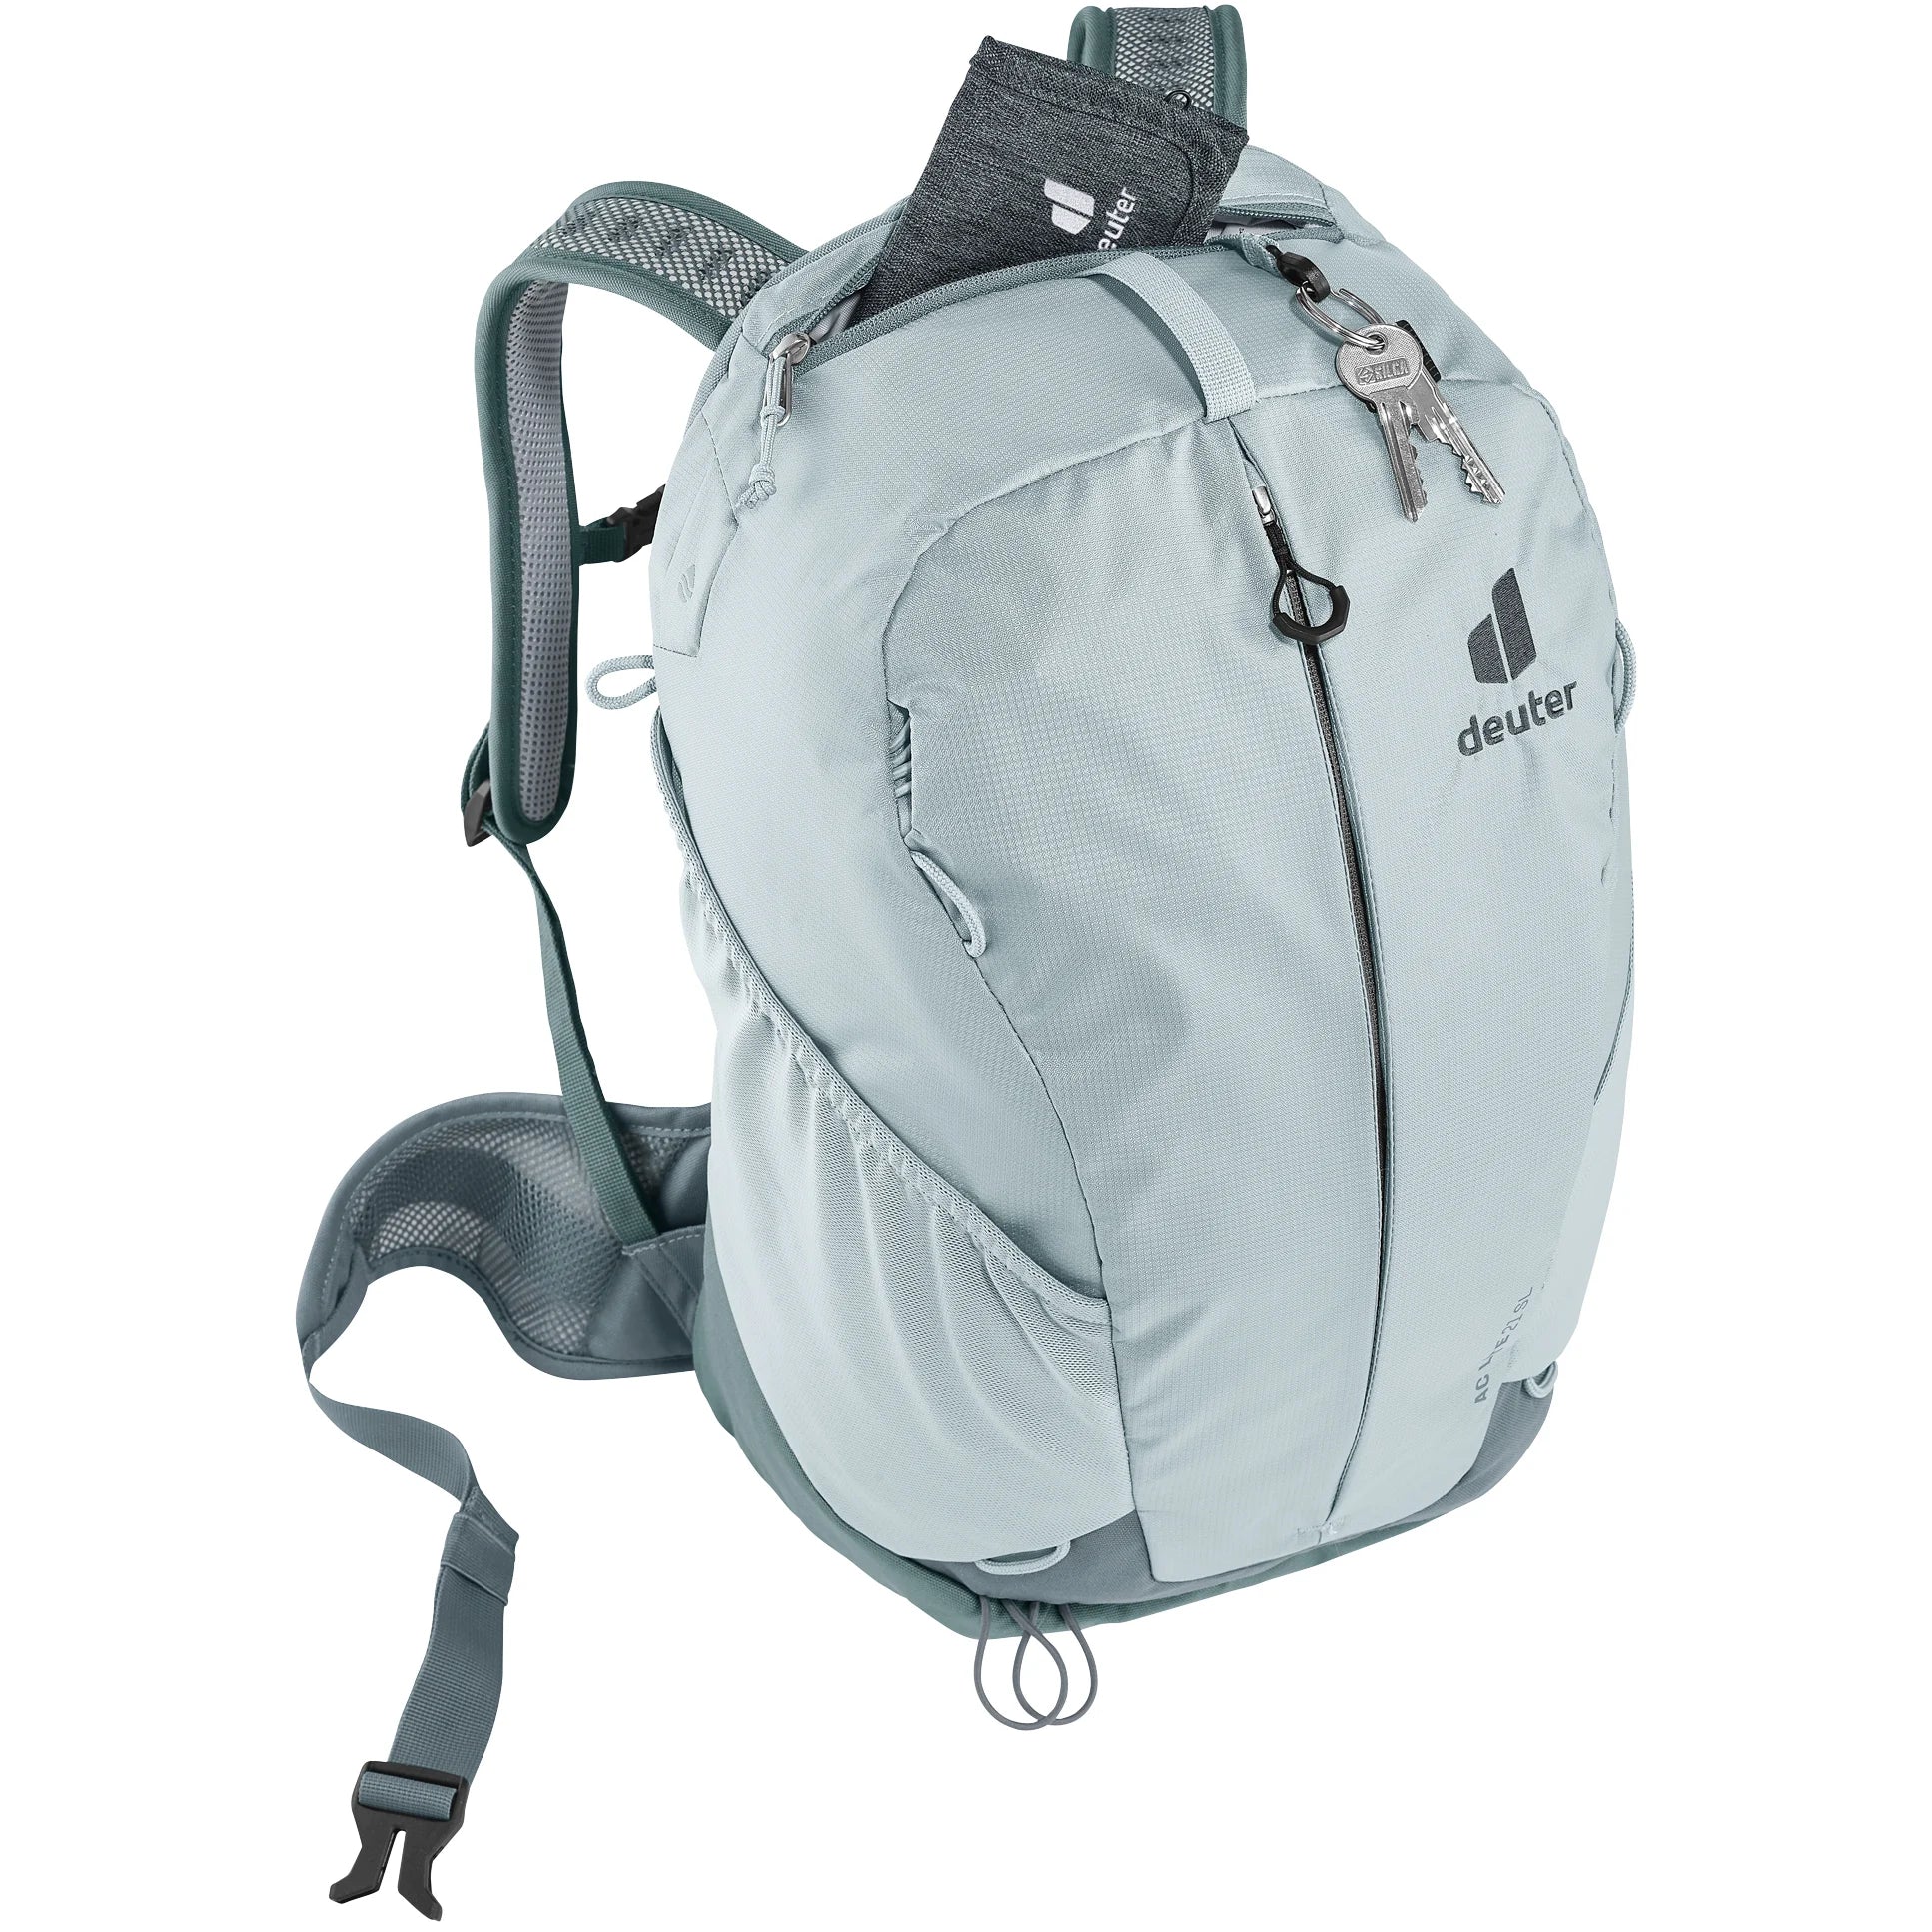 Deuter Travel AC Lite 21 SL hiking backpack 50 cm - Sprout-Linden